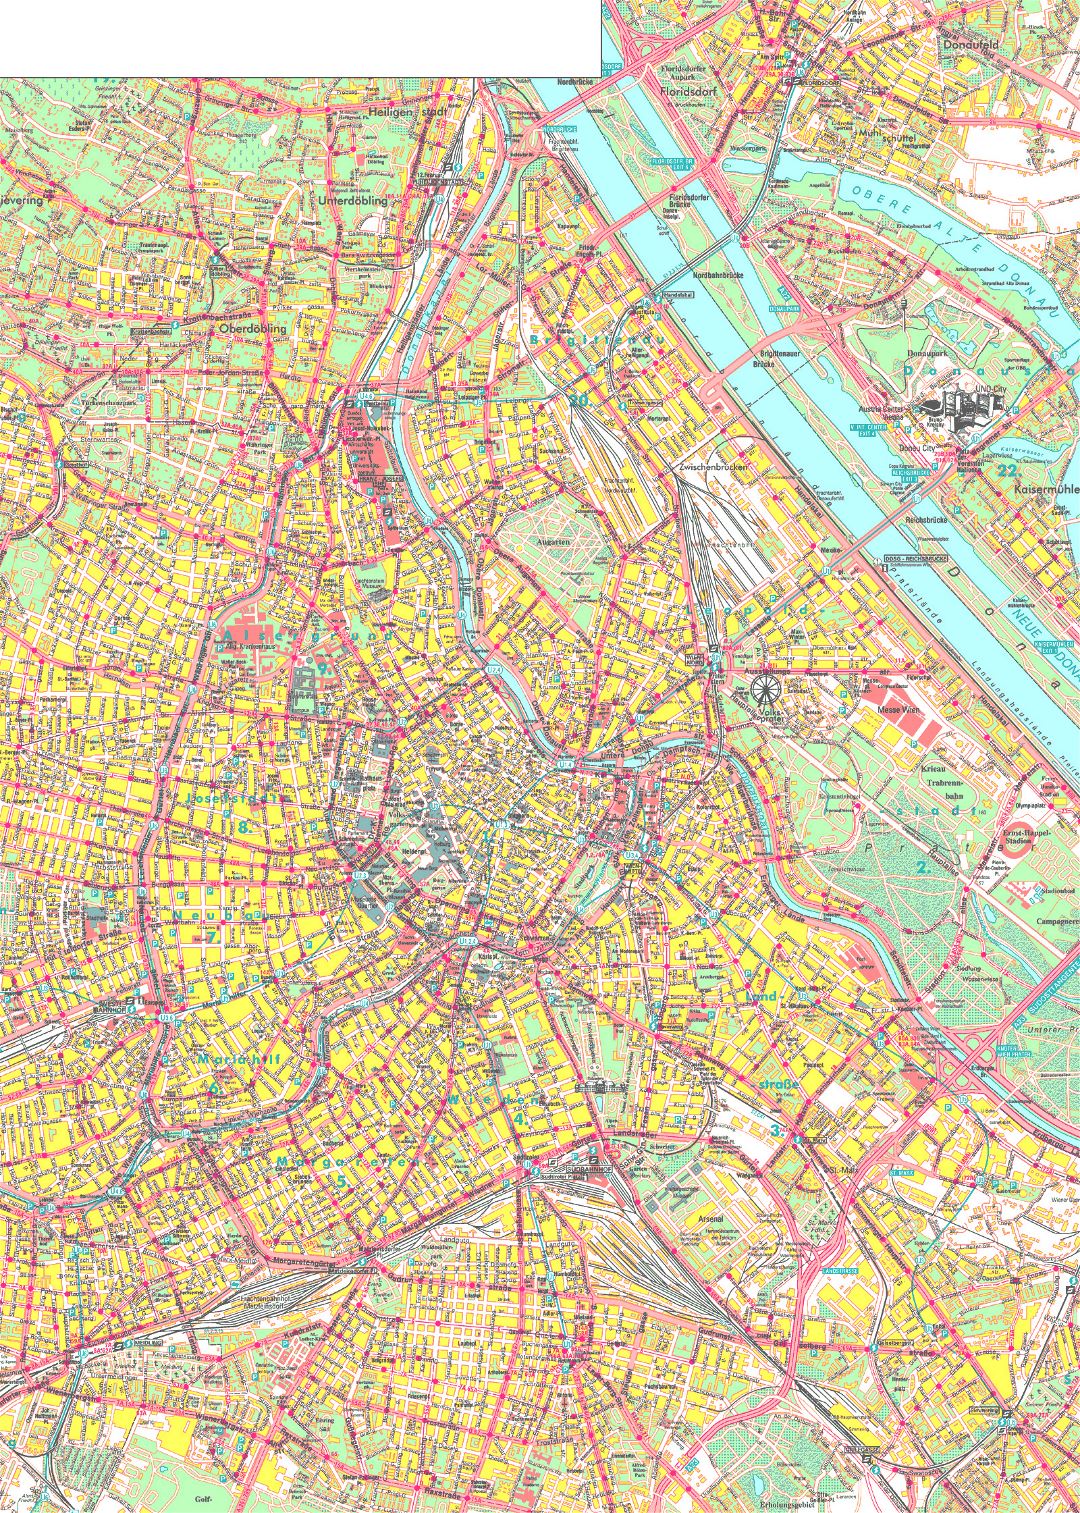 Map of Vienna city